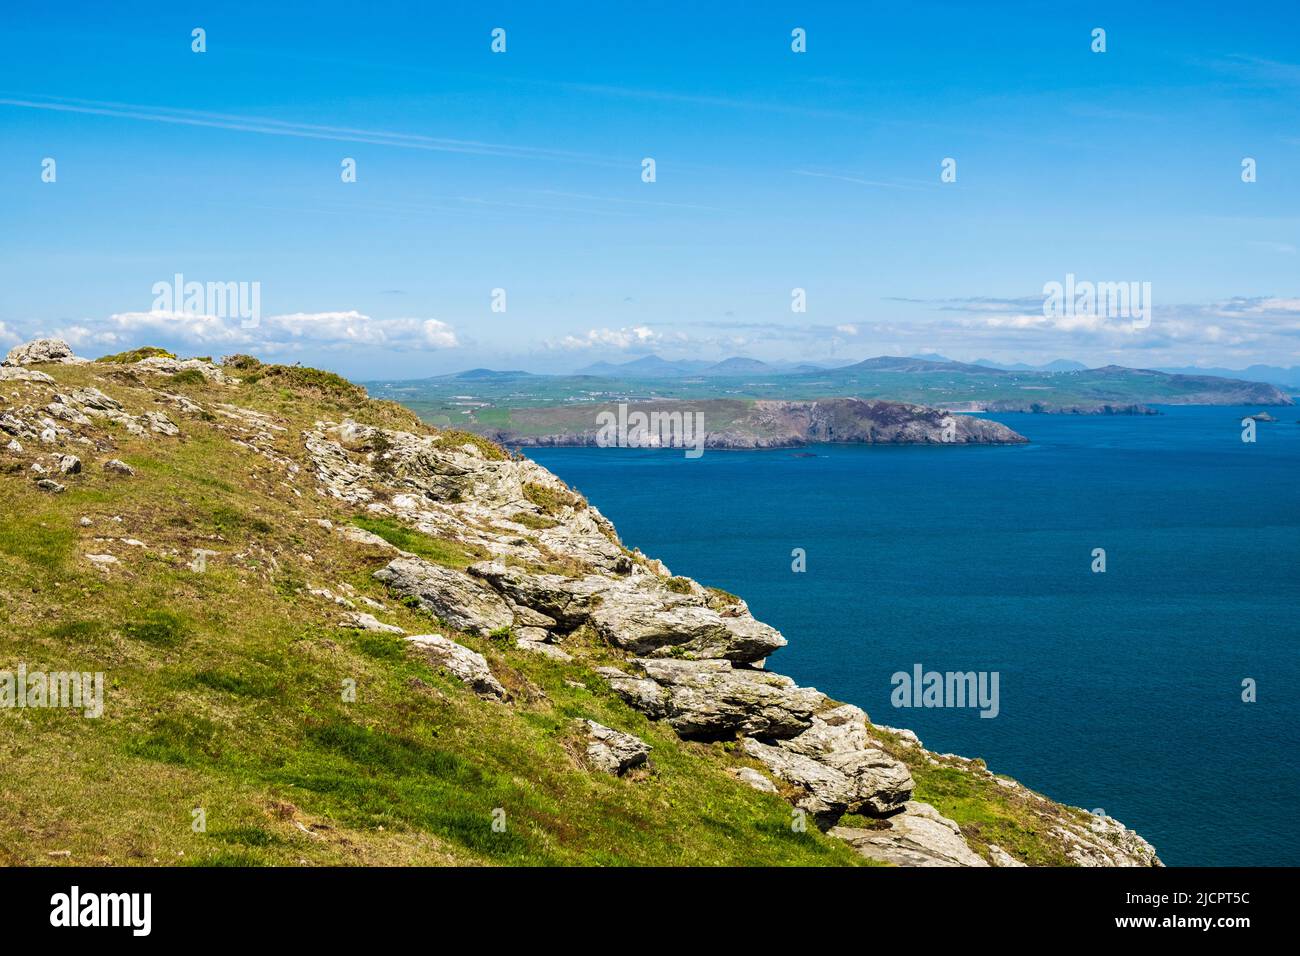 Vista a través del mar azul y tranquilo a la península de Llyn desde la montaña Mynydd Enlli en Ynys Enlli o Bardsey Island en la costa oeste galesa. Gwynedd, al norte de Gales, Reino Unido Foto de stock